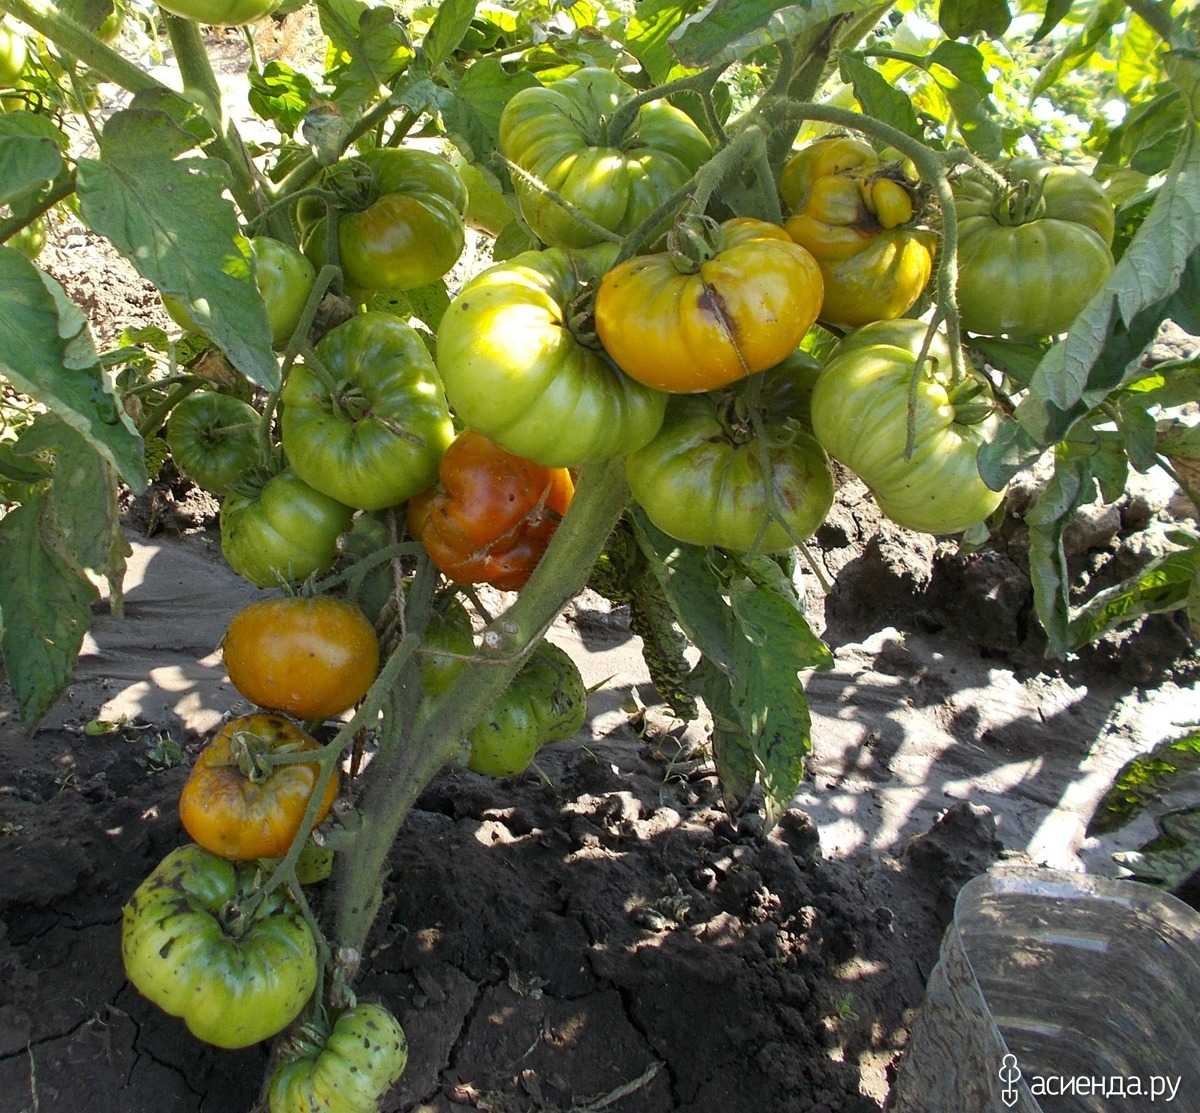 Зеленые томаты: что скрывается за необычным внешним видом